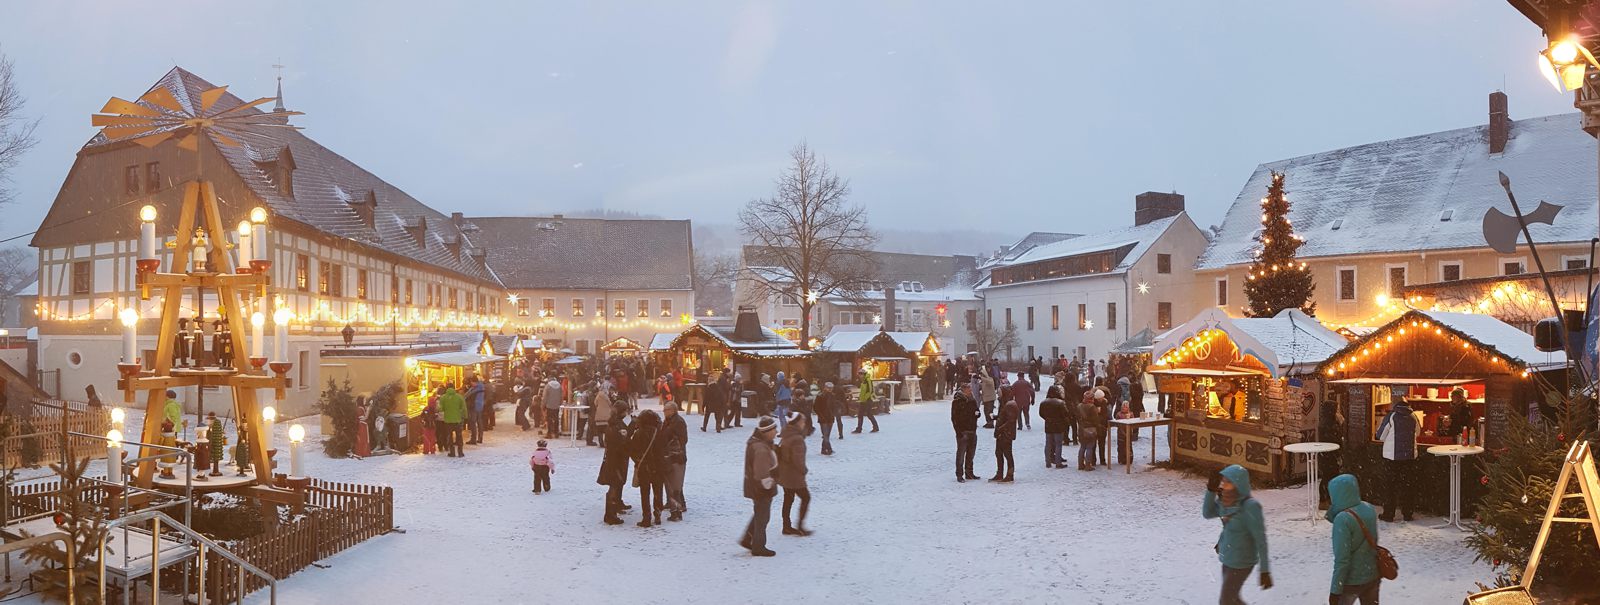 Weihnachtsmarkt in Olbernhau